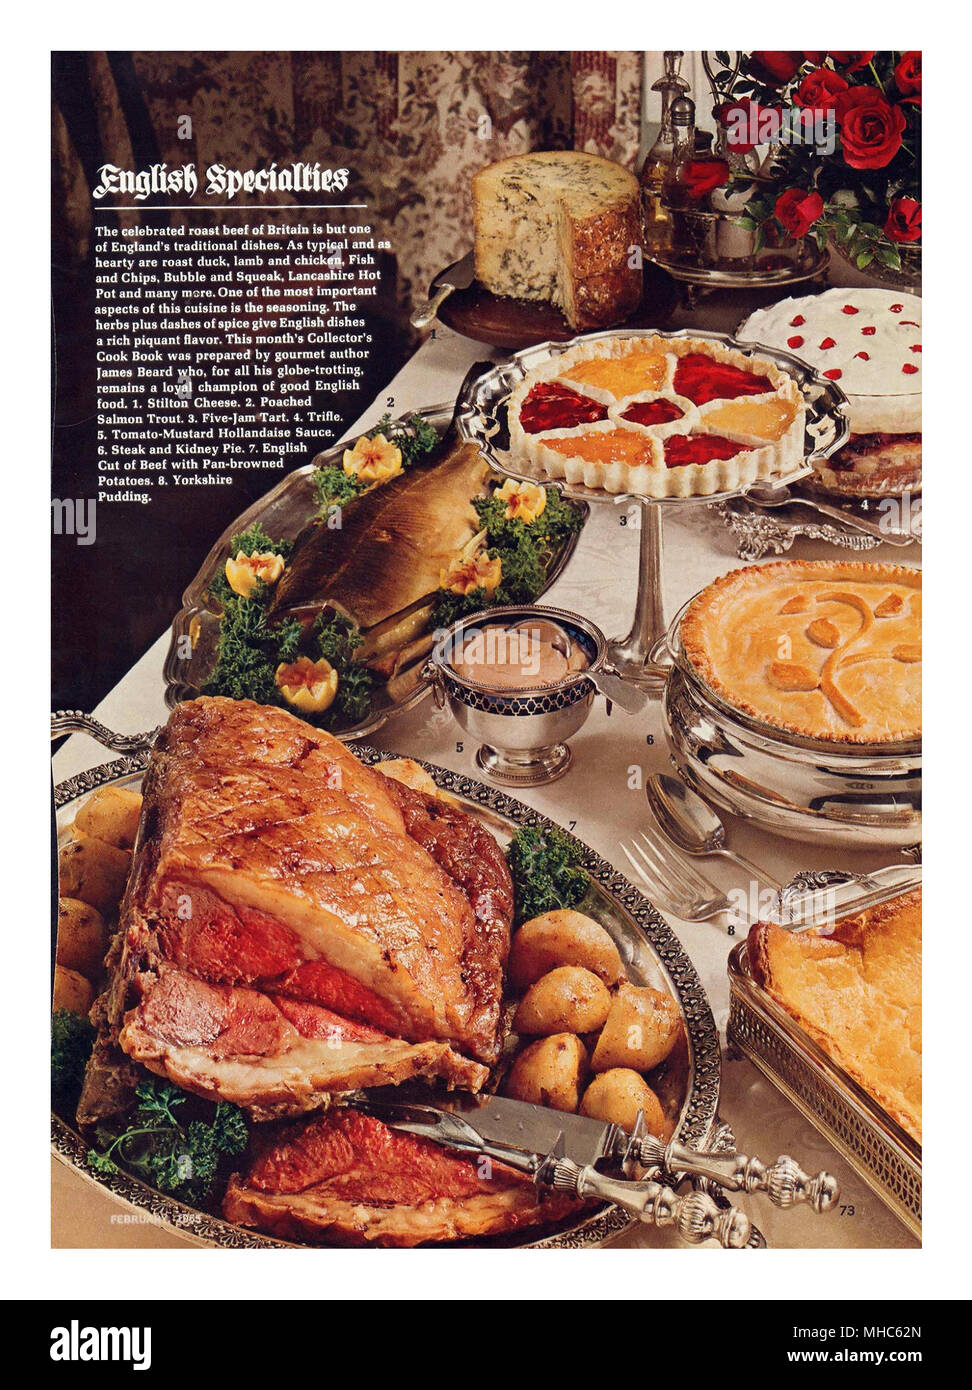 Fiesta de lujo británica de los años 60 entretiene 'especialidades inglesas' carne asada con Mesa de banquete completa de otros alimentos, incluyendo pastel de carne de salmón Queso Stilton y postres Foto de stock